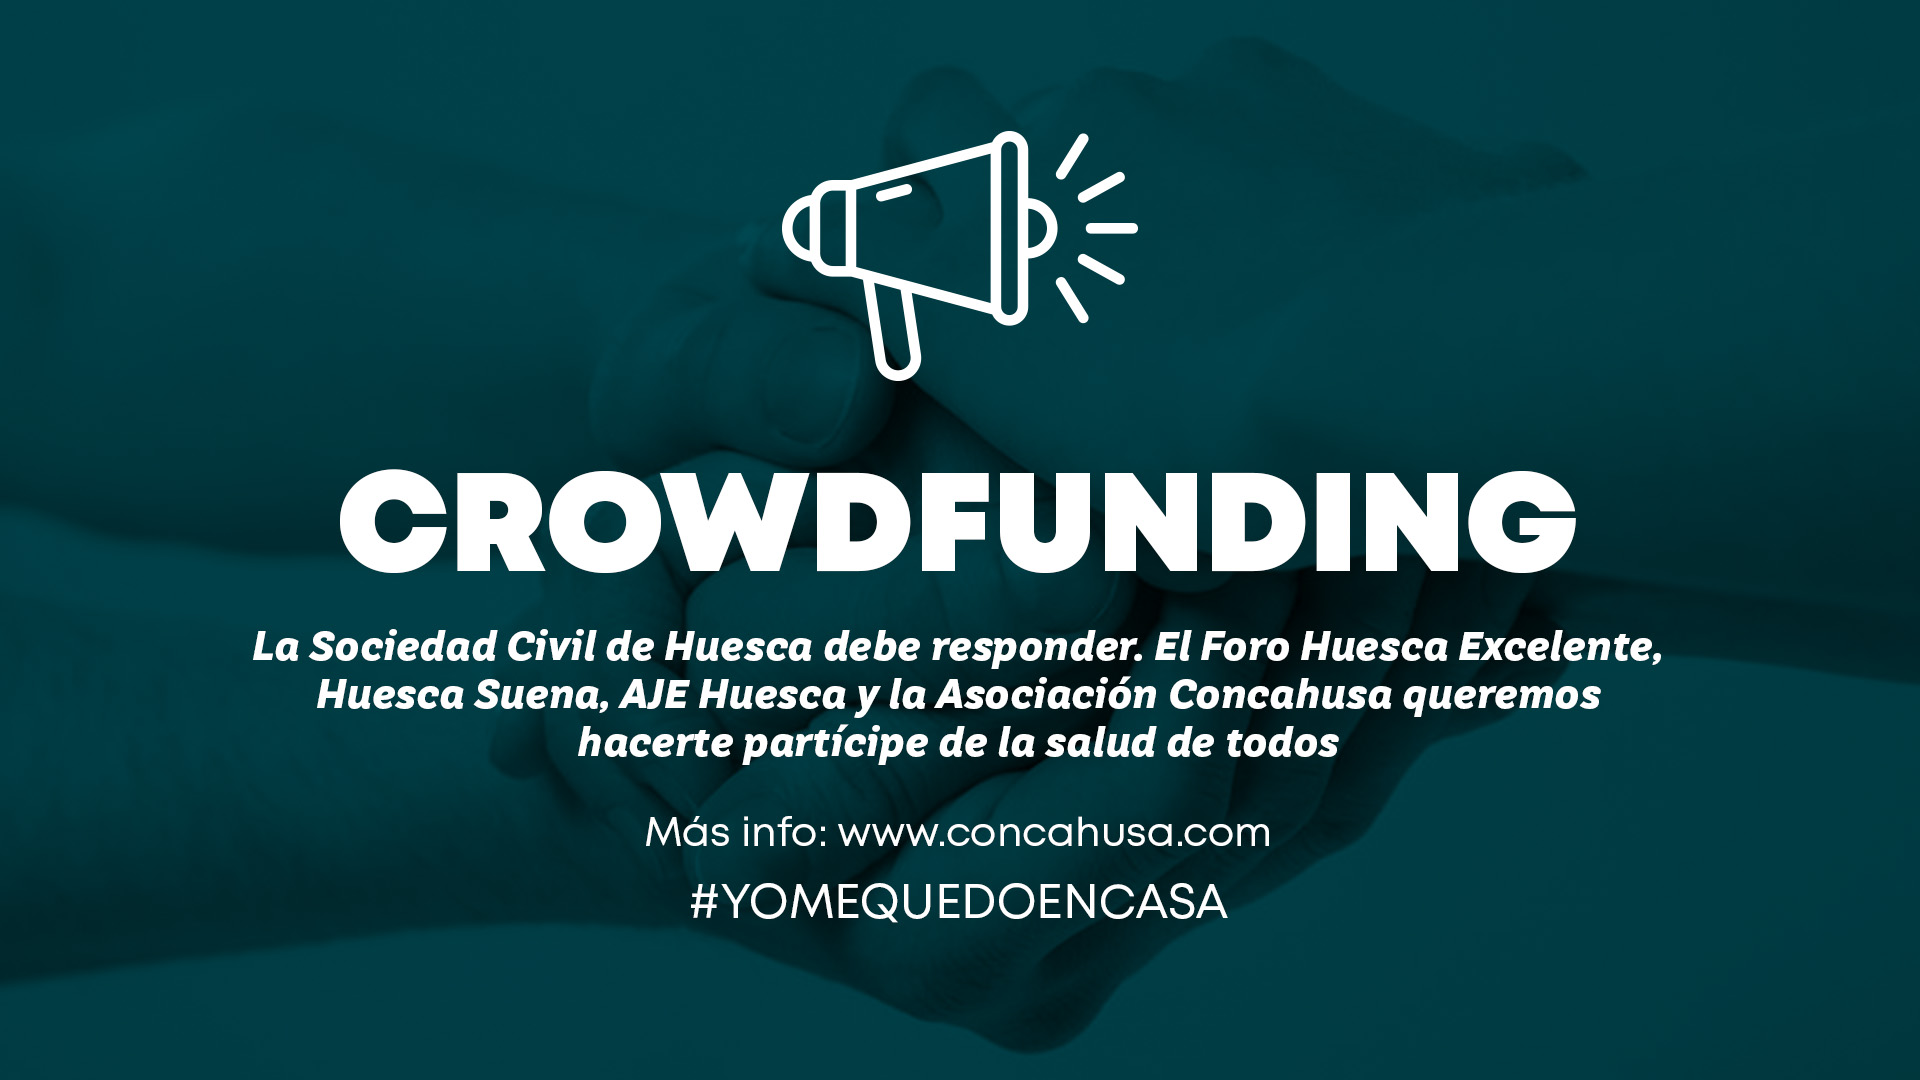 Una semana de Crowdfunding